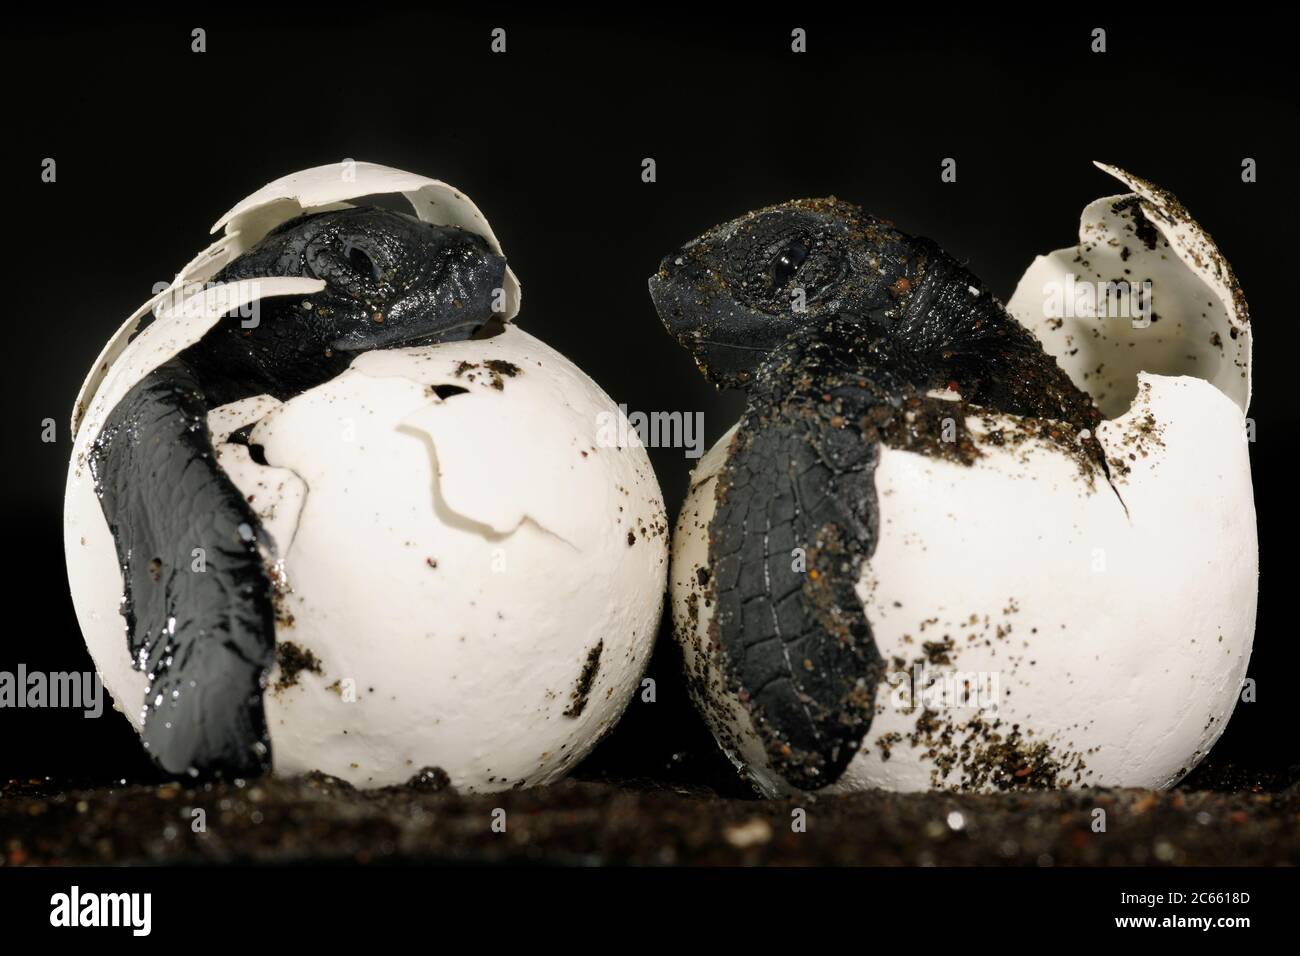 Estos criaderos de una tortuga de mar de la ridley de oliva (Lepidochelys olivacea) deben ser enterrados y protegidos bajo 40 centímetros de arena caliente, pero un perro doméstico los excavó en la playa de Ostional en Costa Rica. Se necesitan casi dos meses para que un huevo de tortuga marina se desarrolle en un pequeño reptil marino perfecto. [tamaño de un solo organismo: 6 cm] Foto de stock